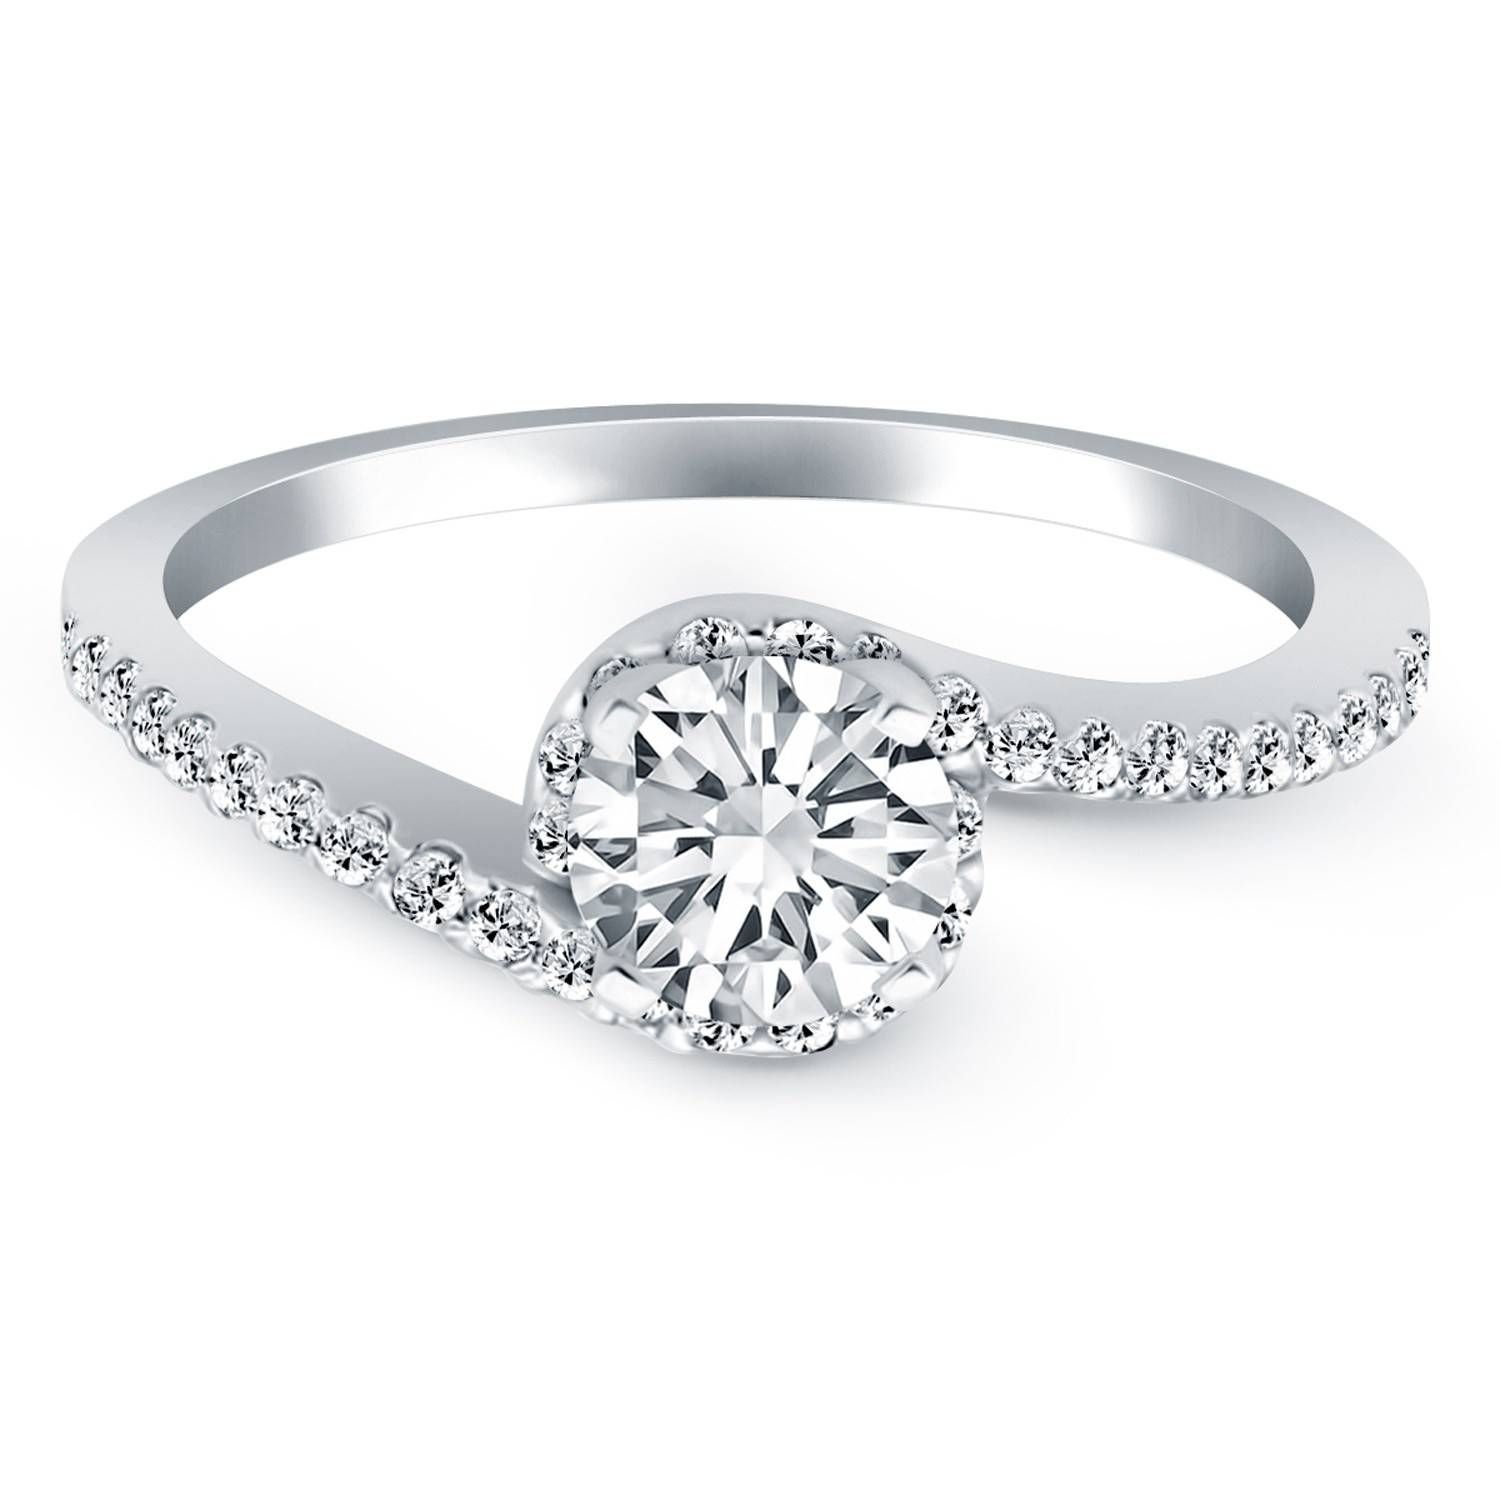 Wrap Around Diamond Rings | Wedding, Promise, Diamond, Engagement Inside Wrap Around Wedding Bands (View 6 of 15)